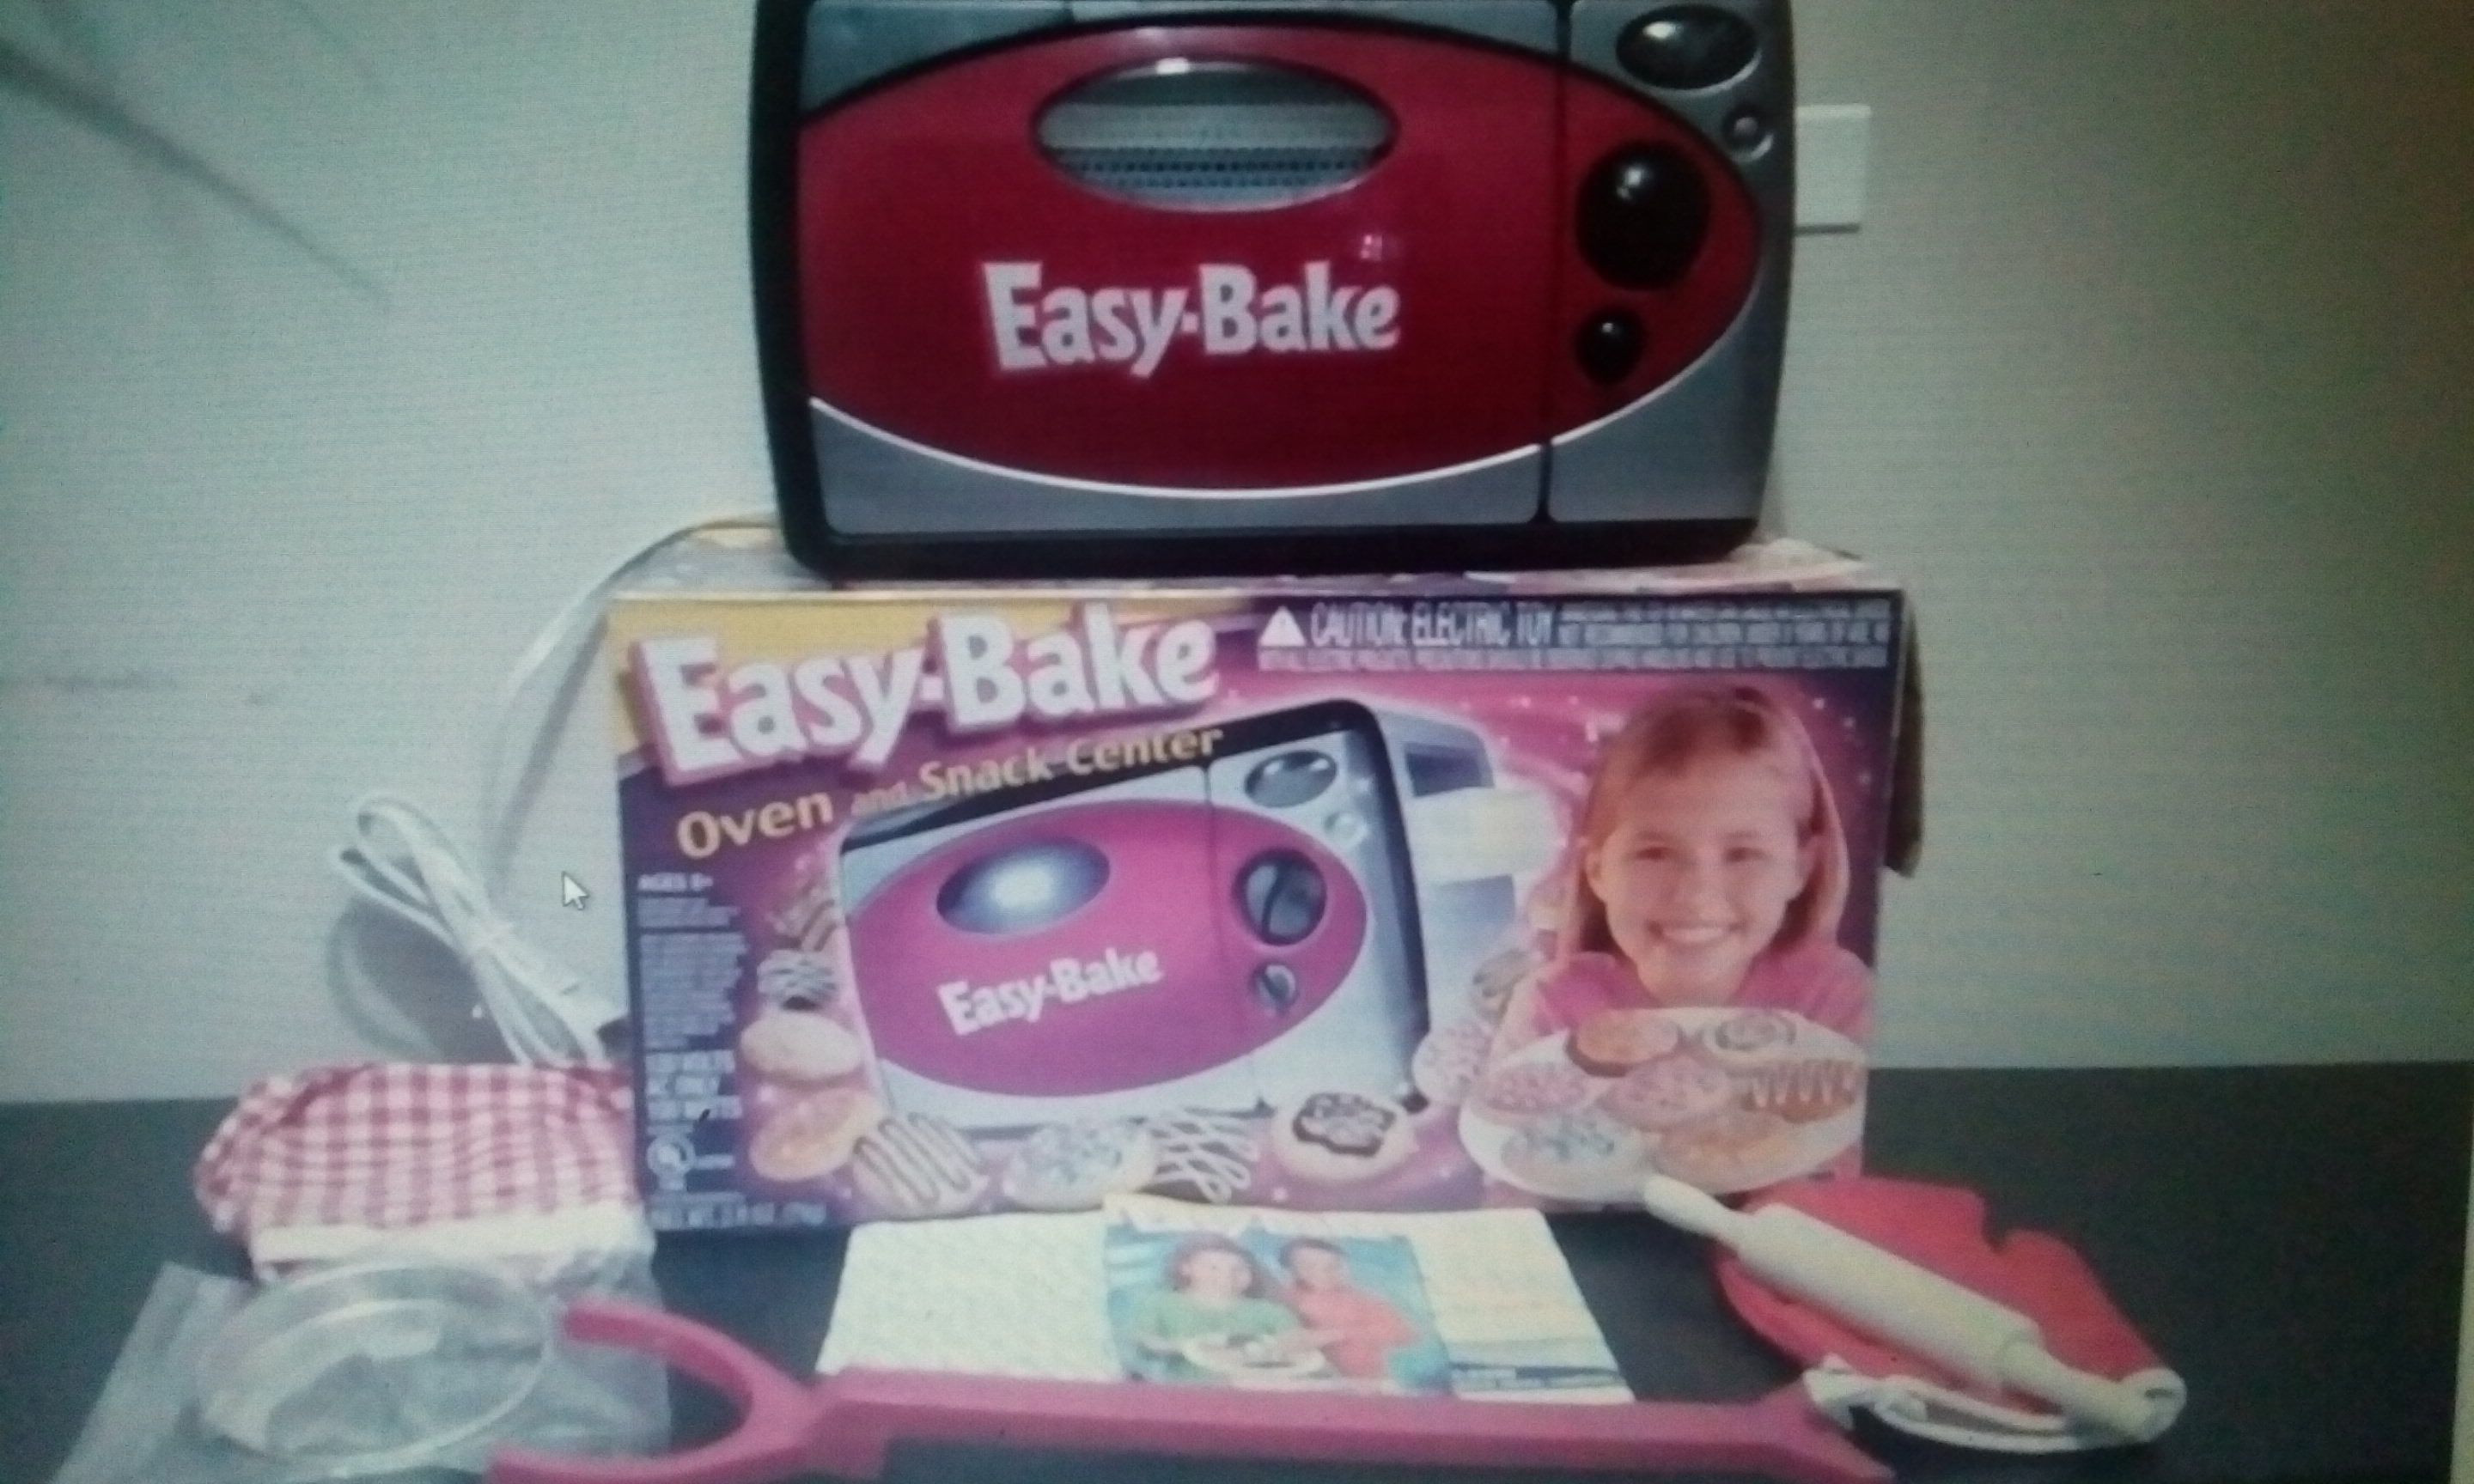 Easy-Bake Oven Snack Center